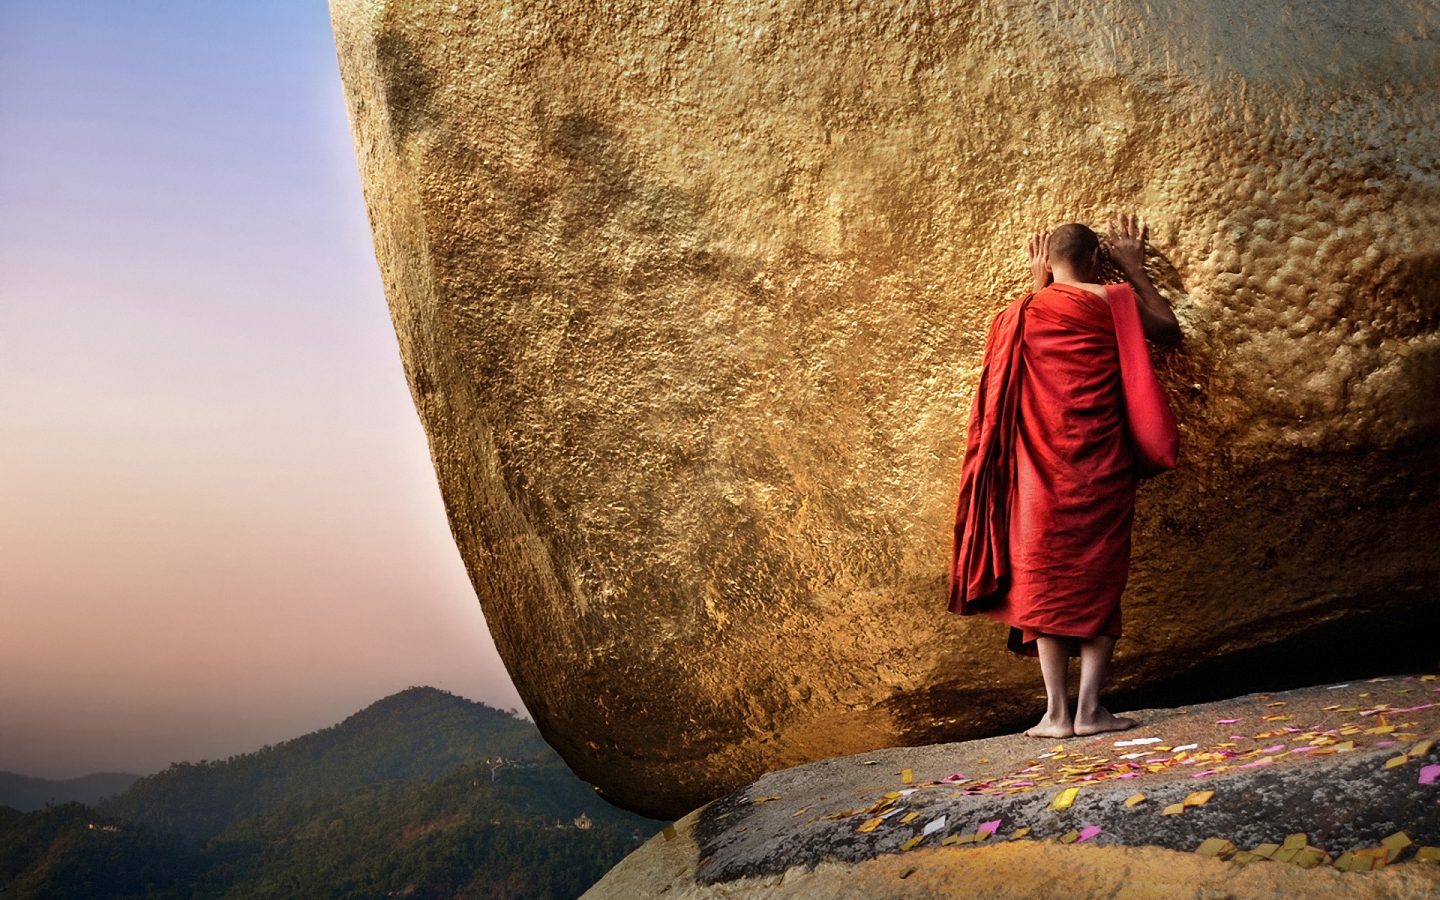 Golden Mount Myanmar for 1440 x 900 widescreen resolution